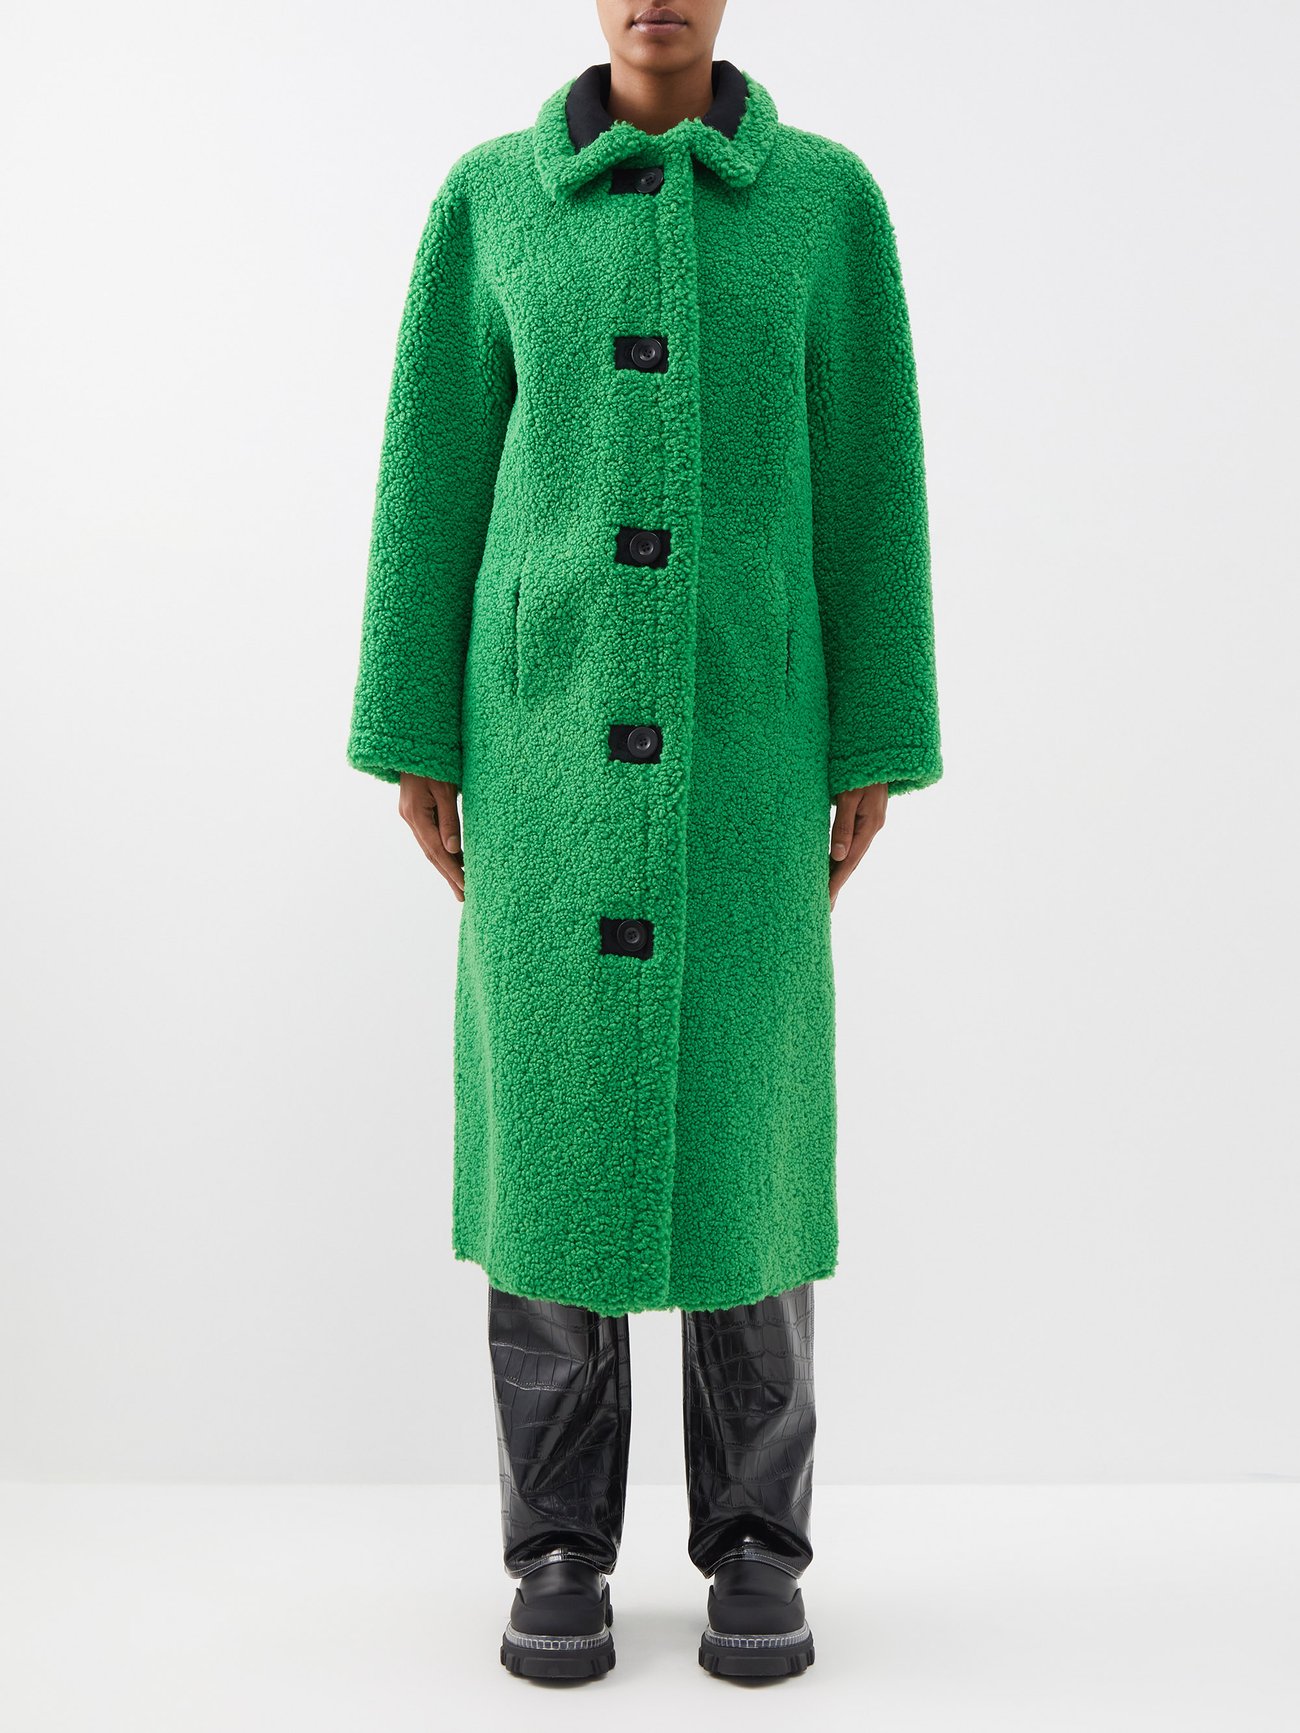 STAND STUDIO
Kenca reversible faux-shearling coat